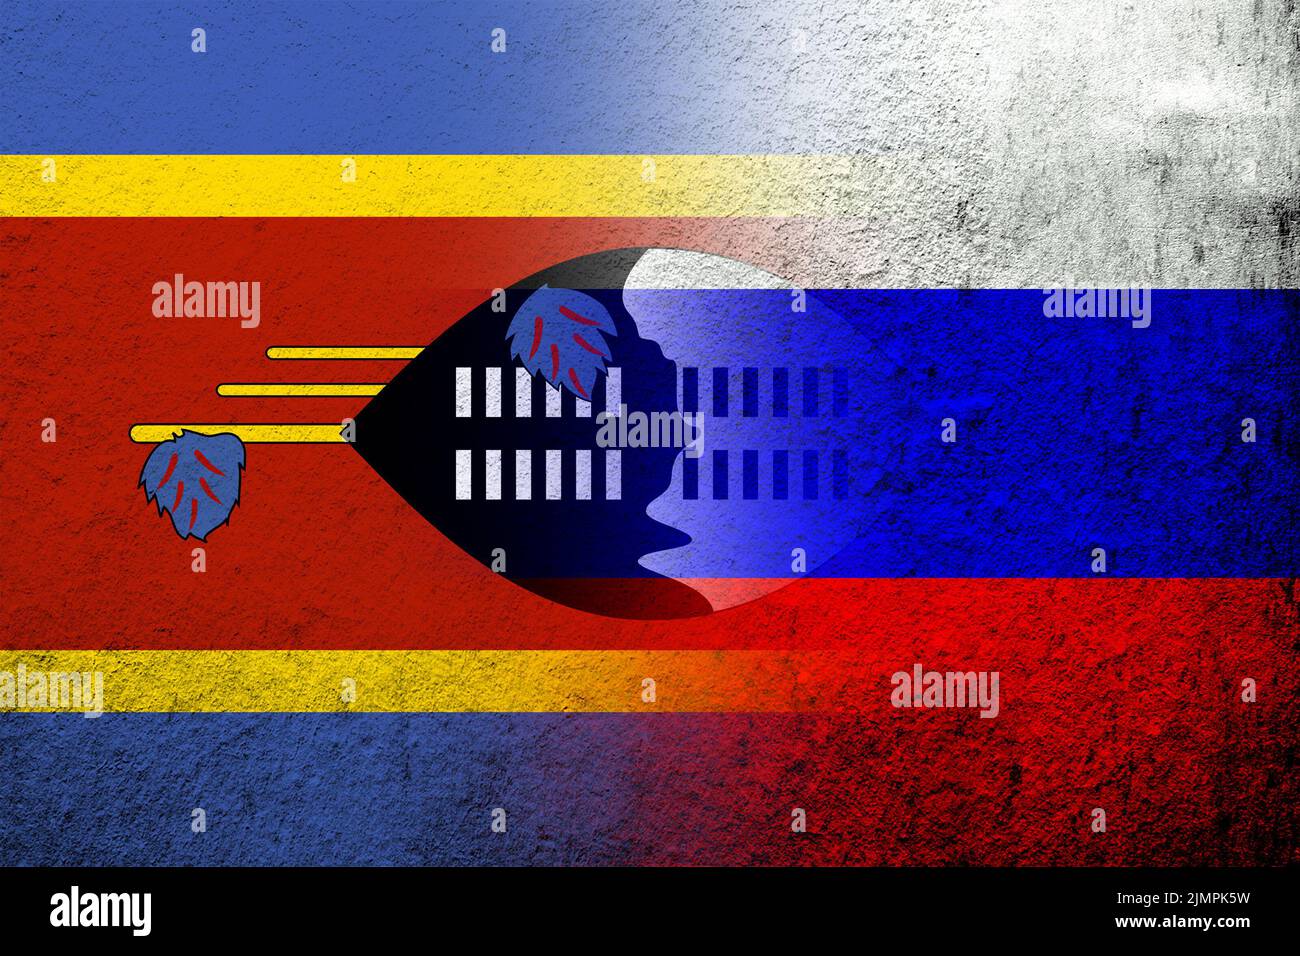 Drapeau national de la Fédération de Russie avec le Royaume de eSwatini Swaziland drapeau national. Grunge l'arrière-plan Banque D'Images